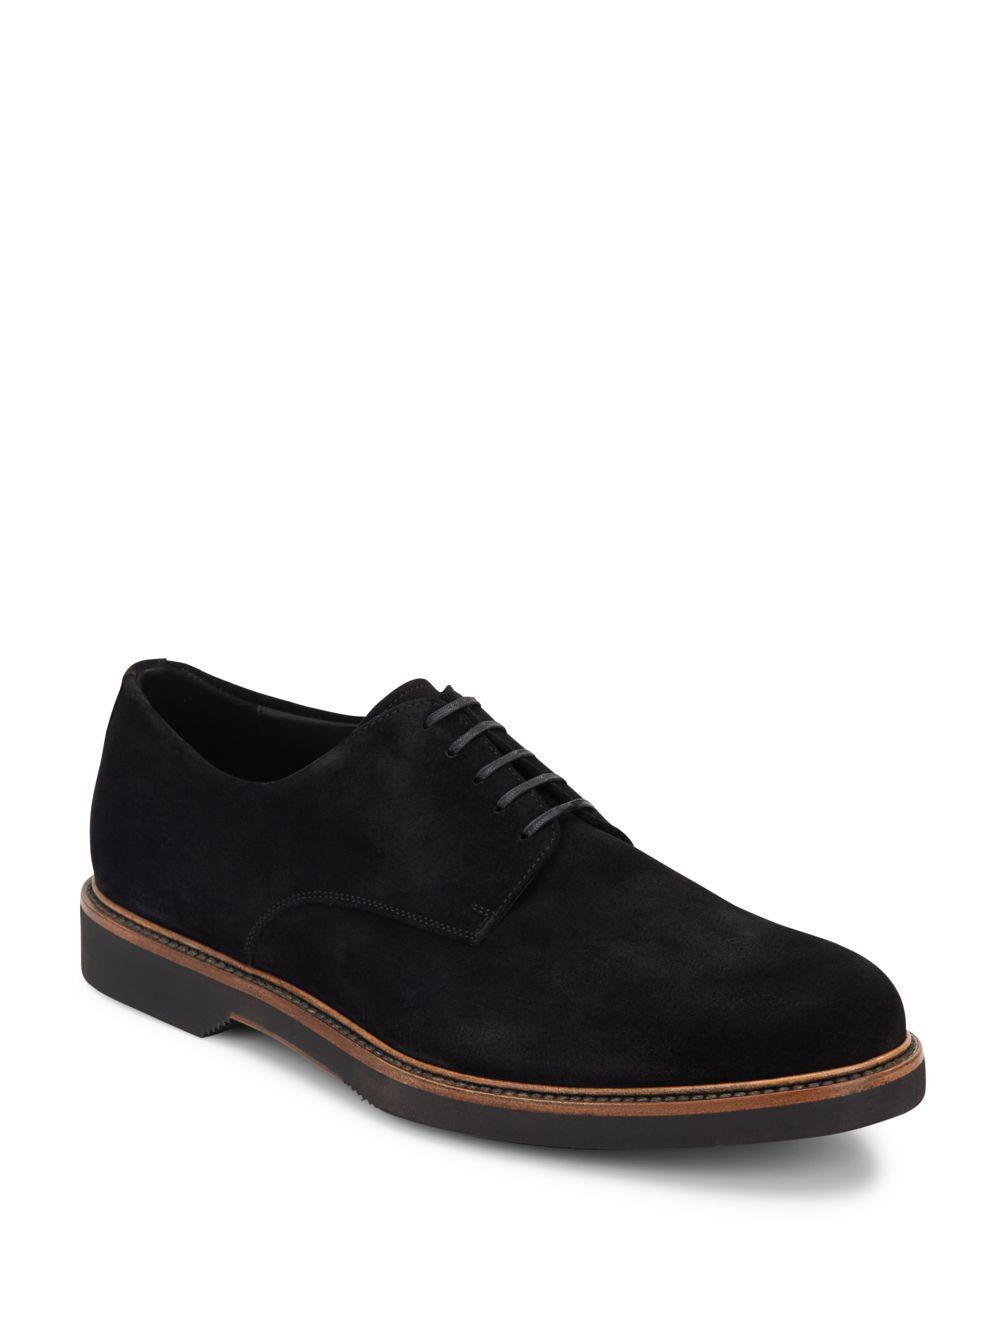 Lyst - Ferragamo Metropole Suede Derby Shoes in Black for Men